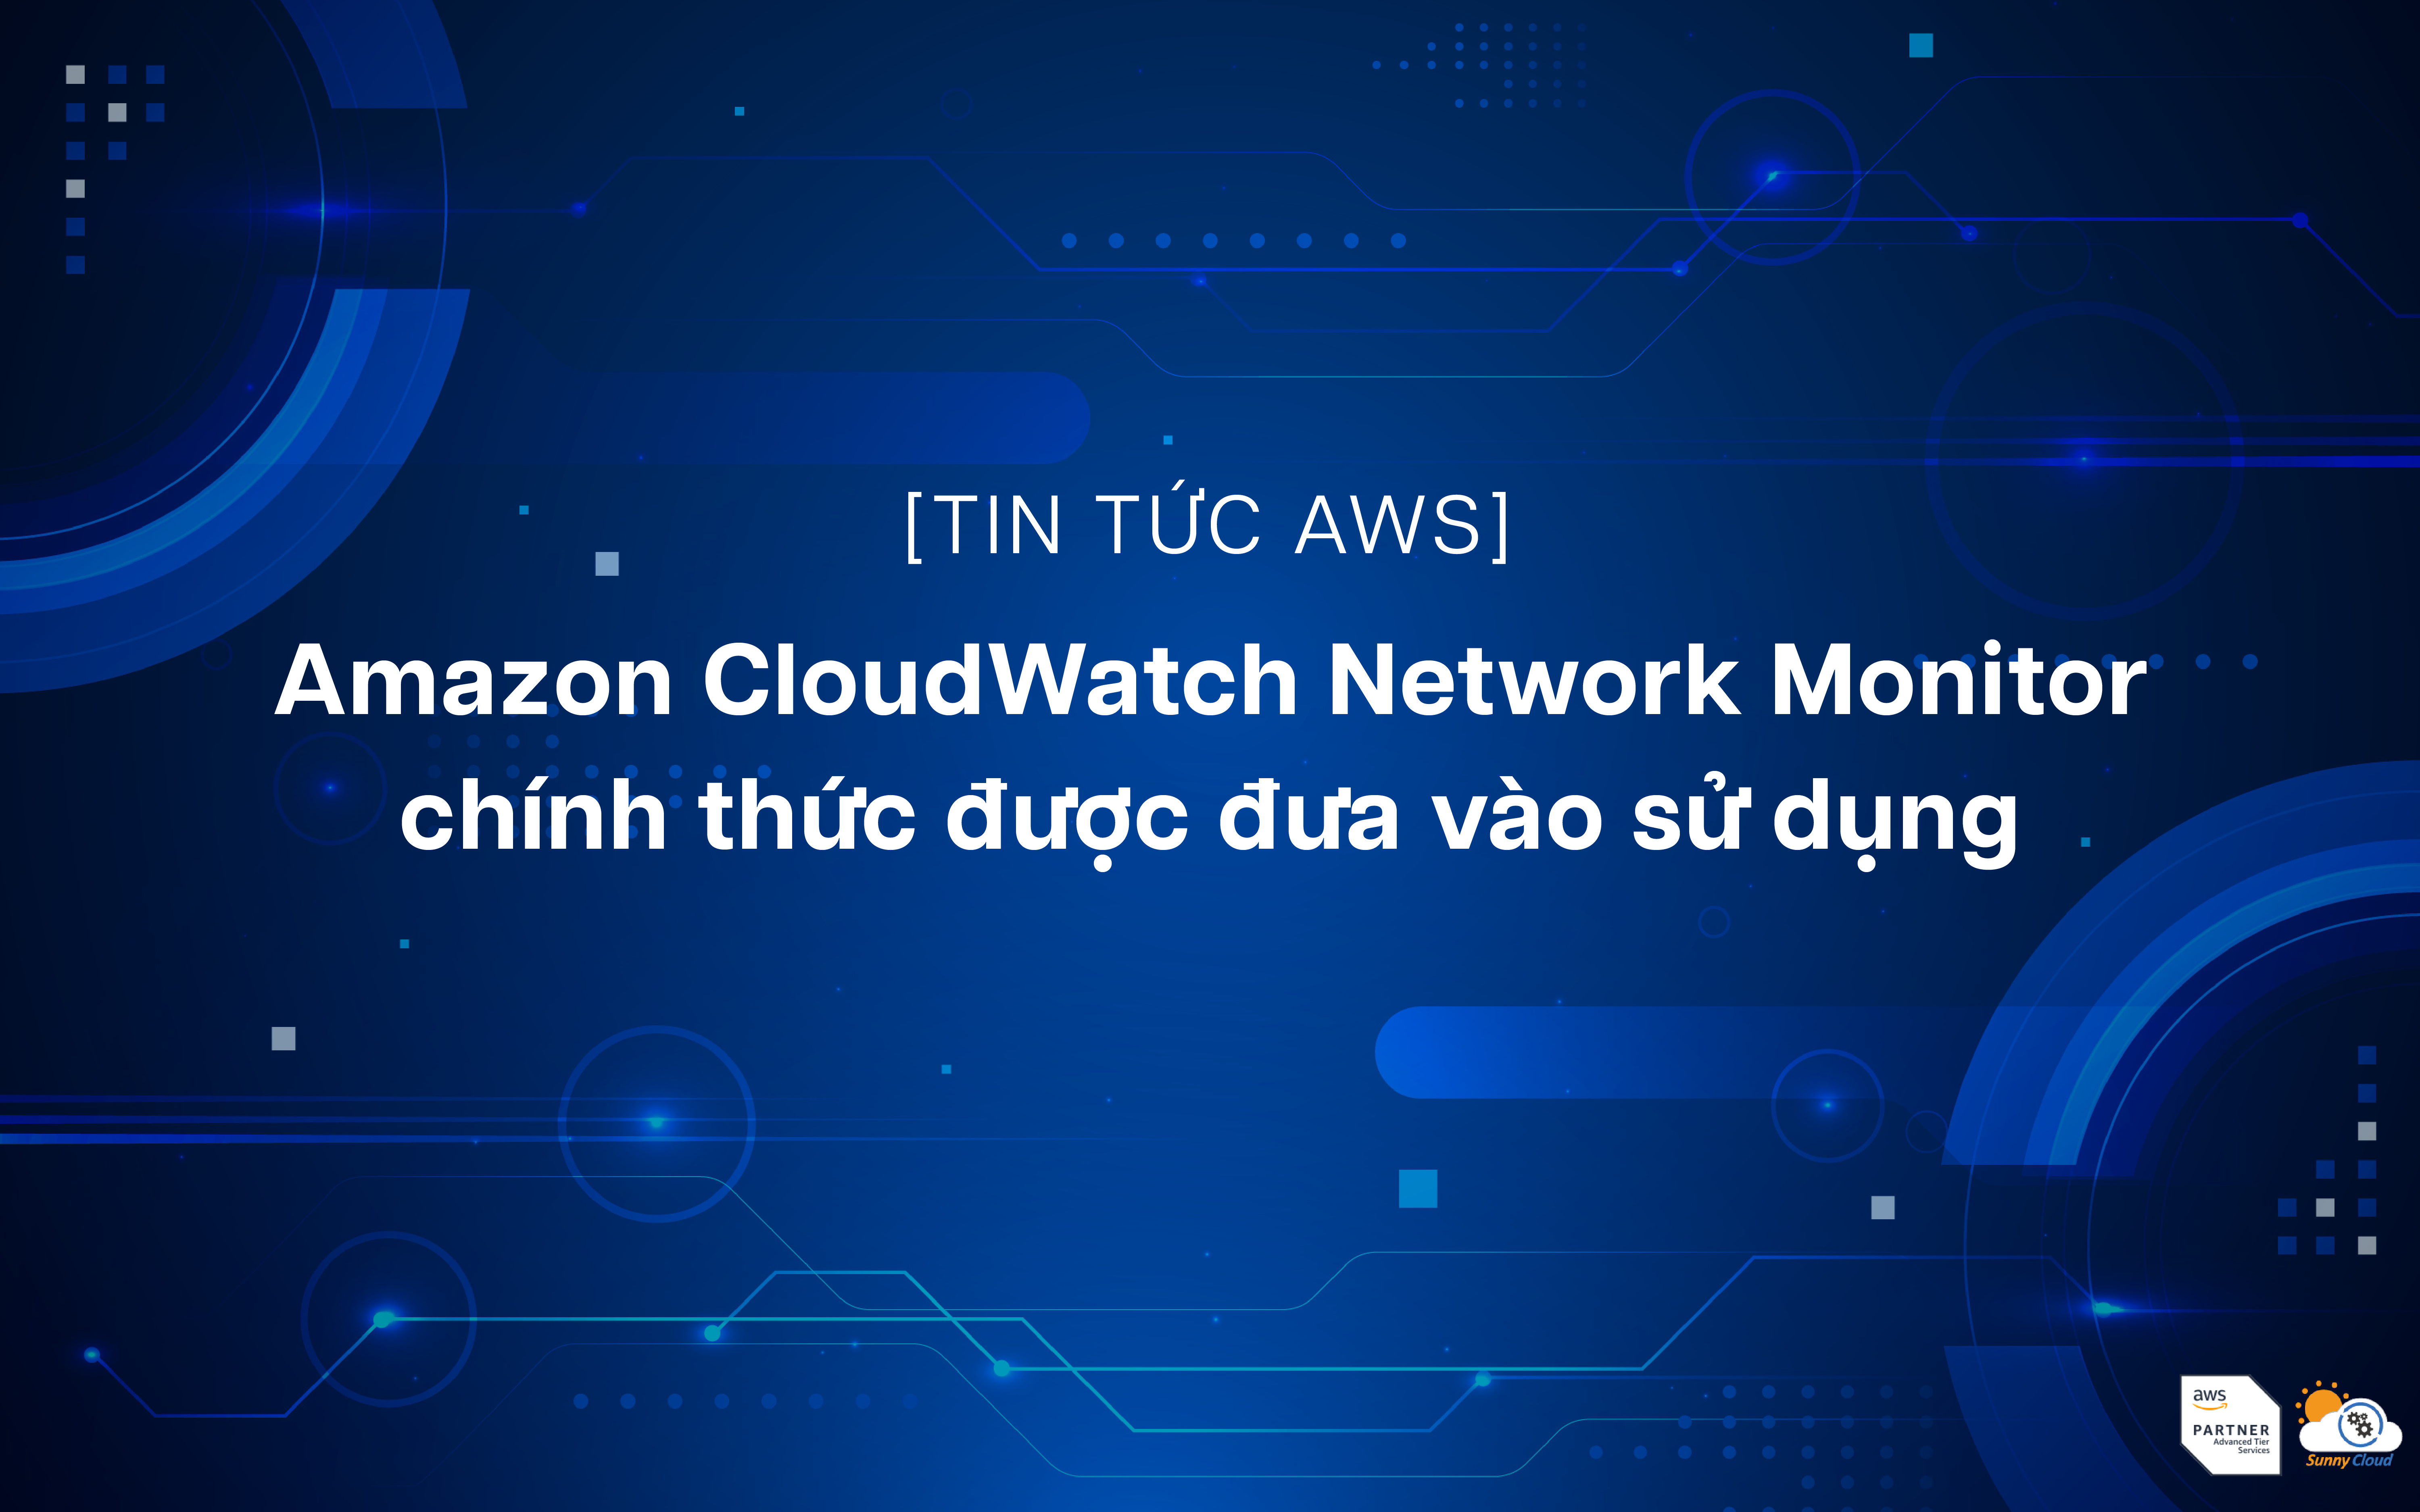 amazon-cloudwatch-network-monitor-chinh-thuc-duoc-dua-vao-su-dung